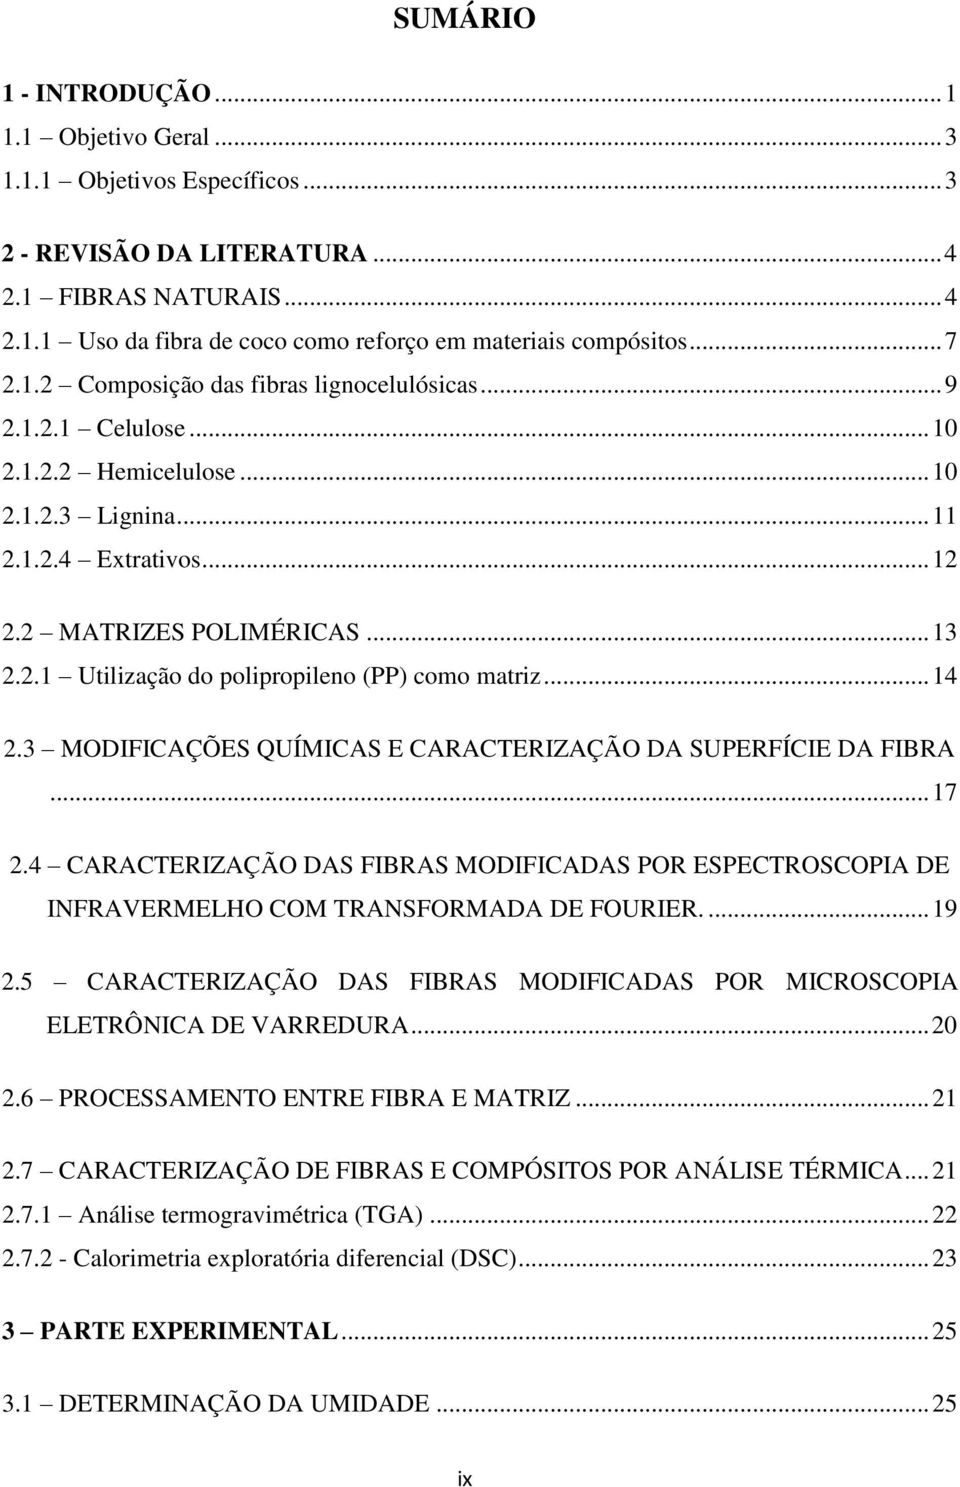 .. 14 2.3 MODIFICAÇÕES QUÍMICAS E CARACTERIZAÇÃO DA SUPERFÍCIE DA FIBRA... 17 2.4 CARACTERIZAÇÃO DAS FIBRAS MODIFICADAS POR ESPECTROSCOPIA DE INFRAVERMELHO COM TRANSFORMADA DE FOURIER.... 19 2.